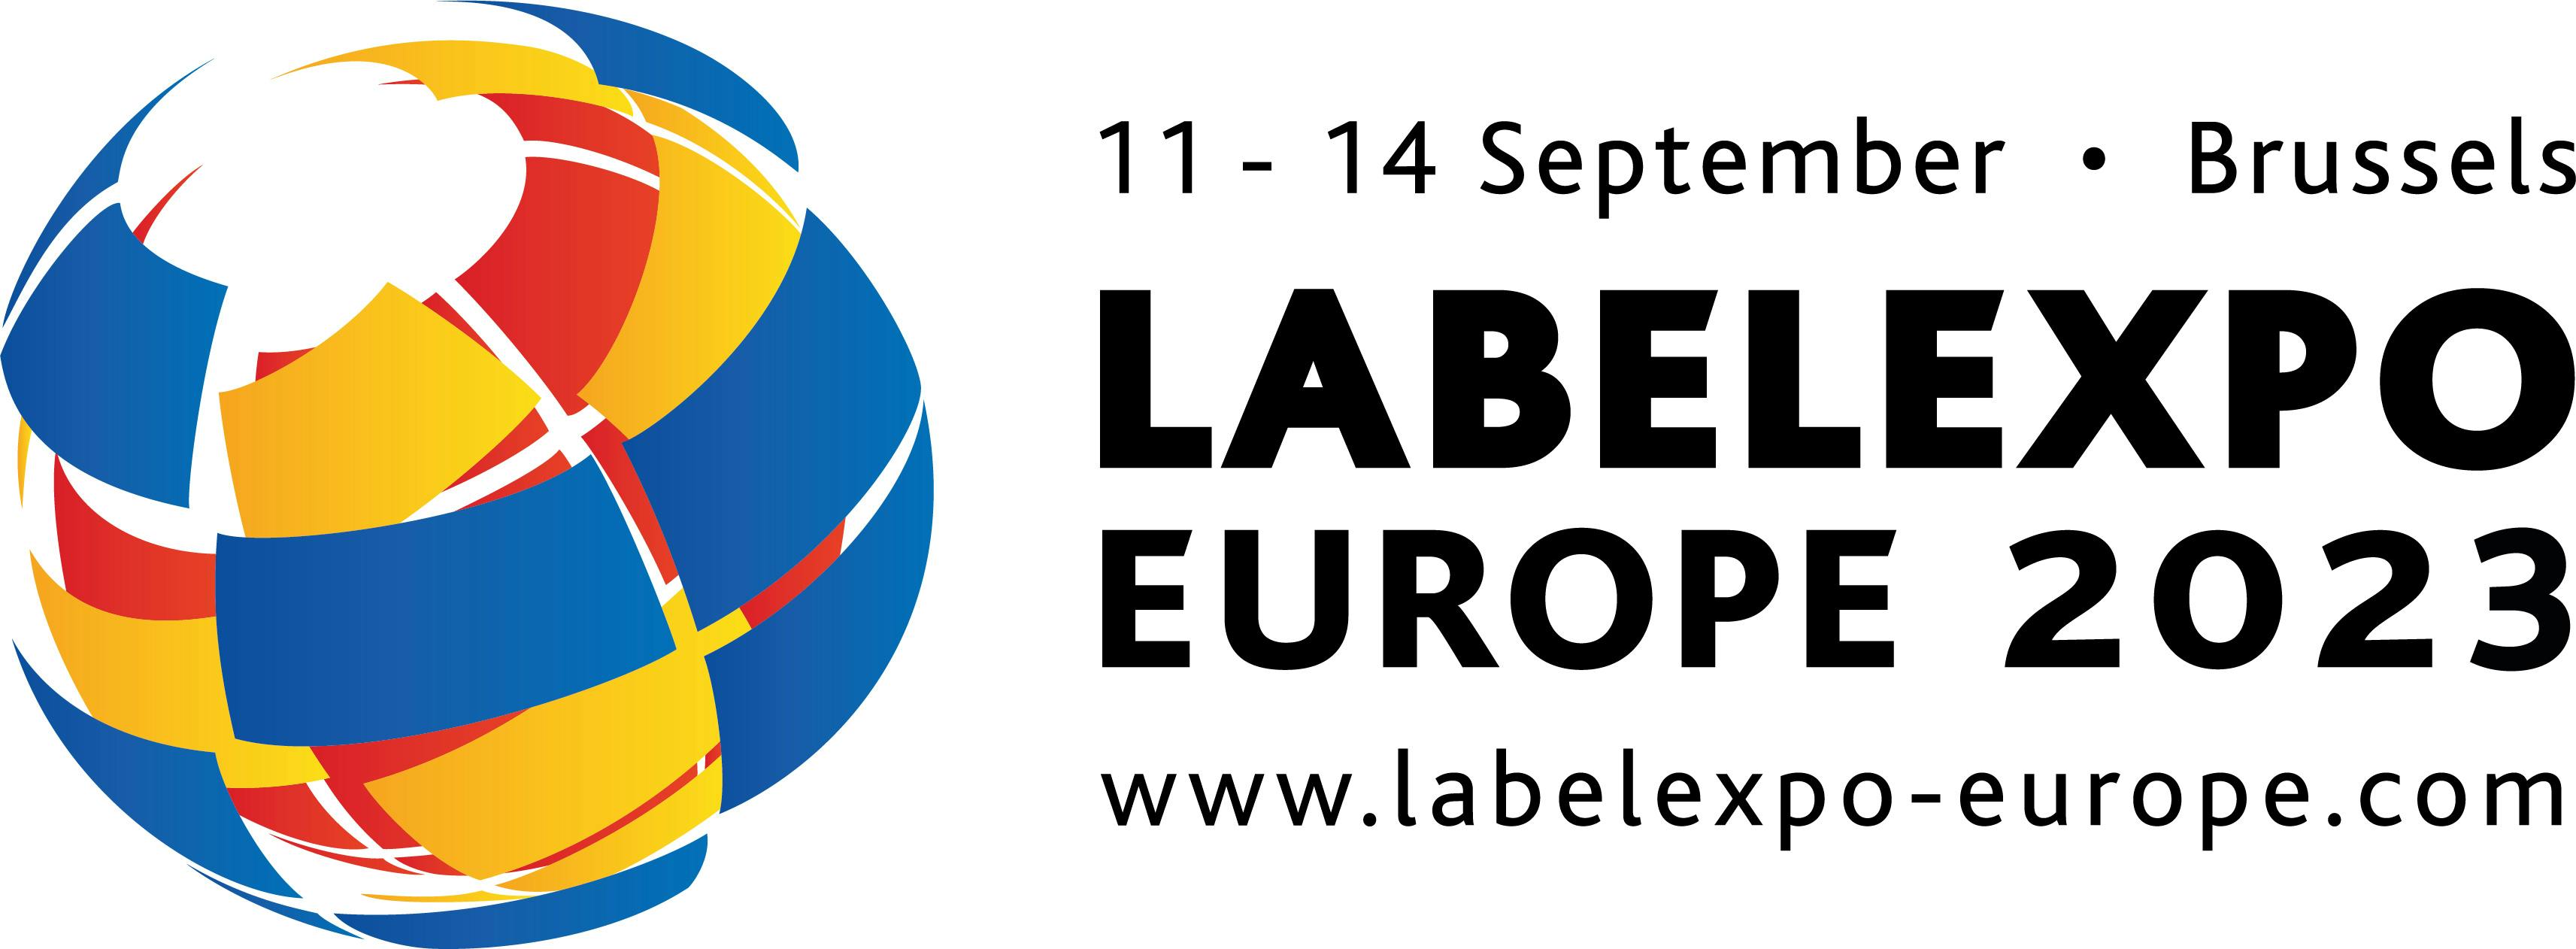 Vieni a trovarci a Labelexpo Europe 2023 allo stand 6E54